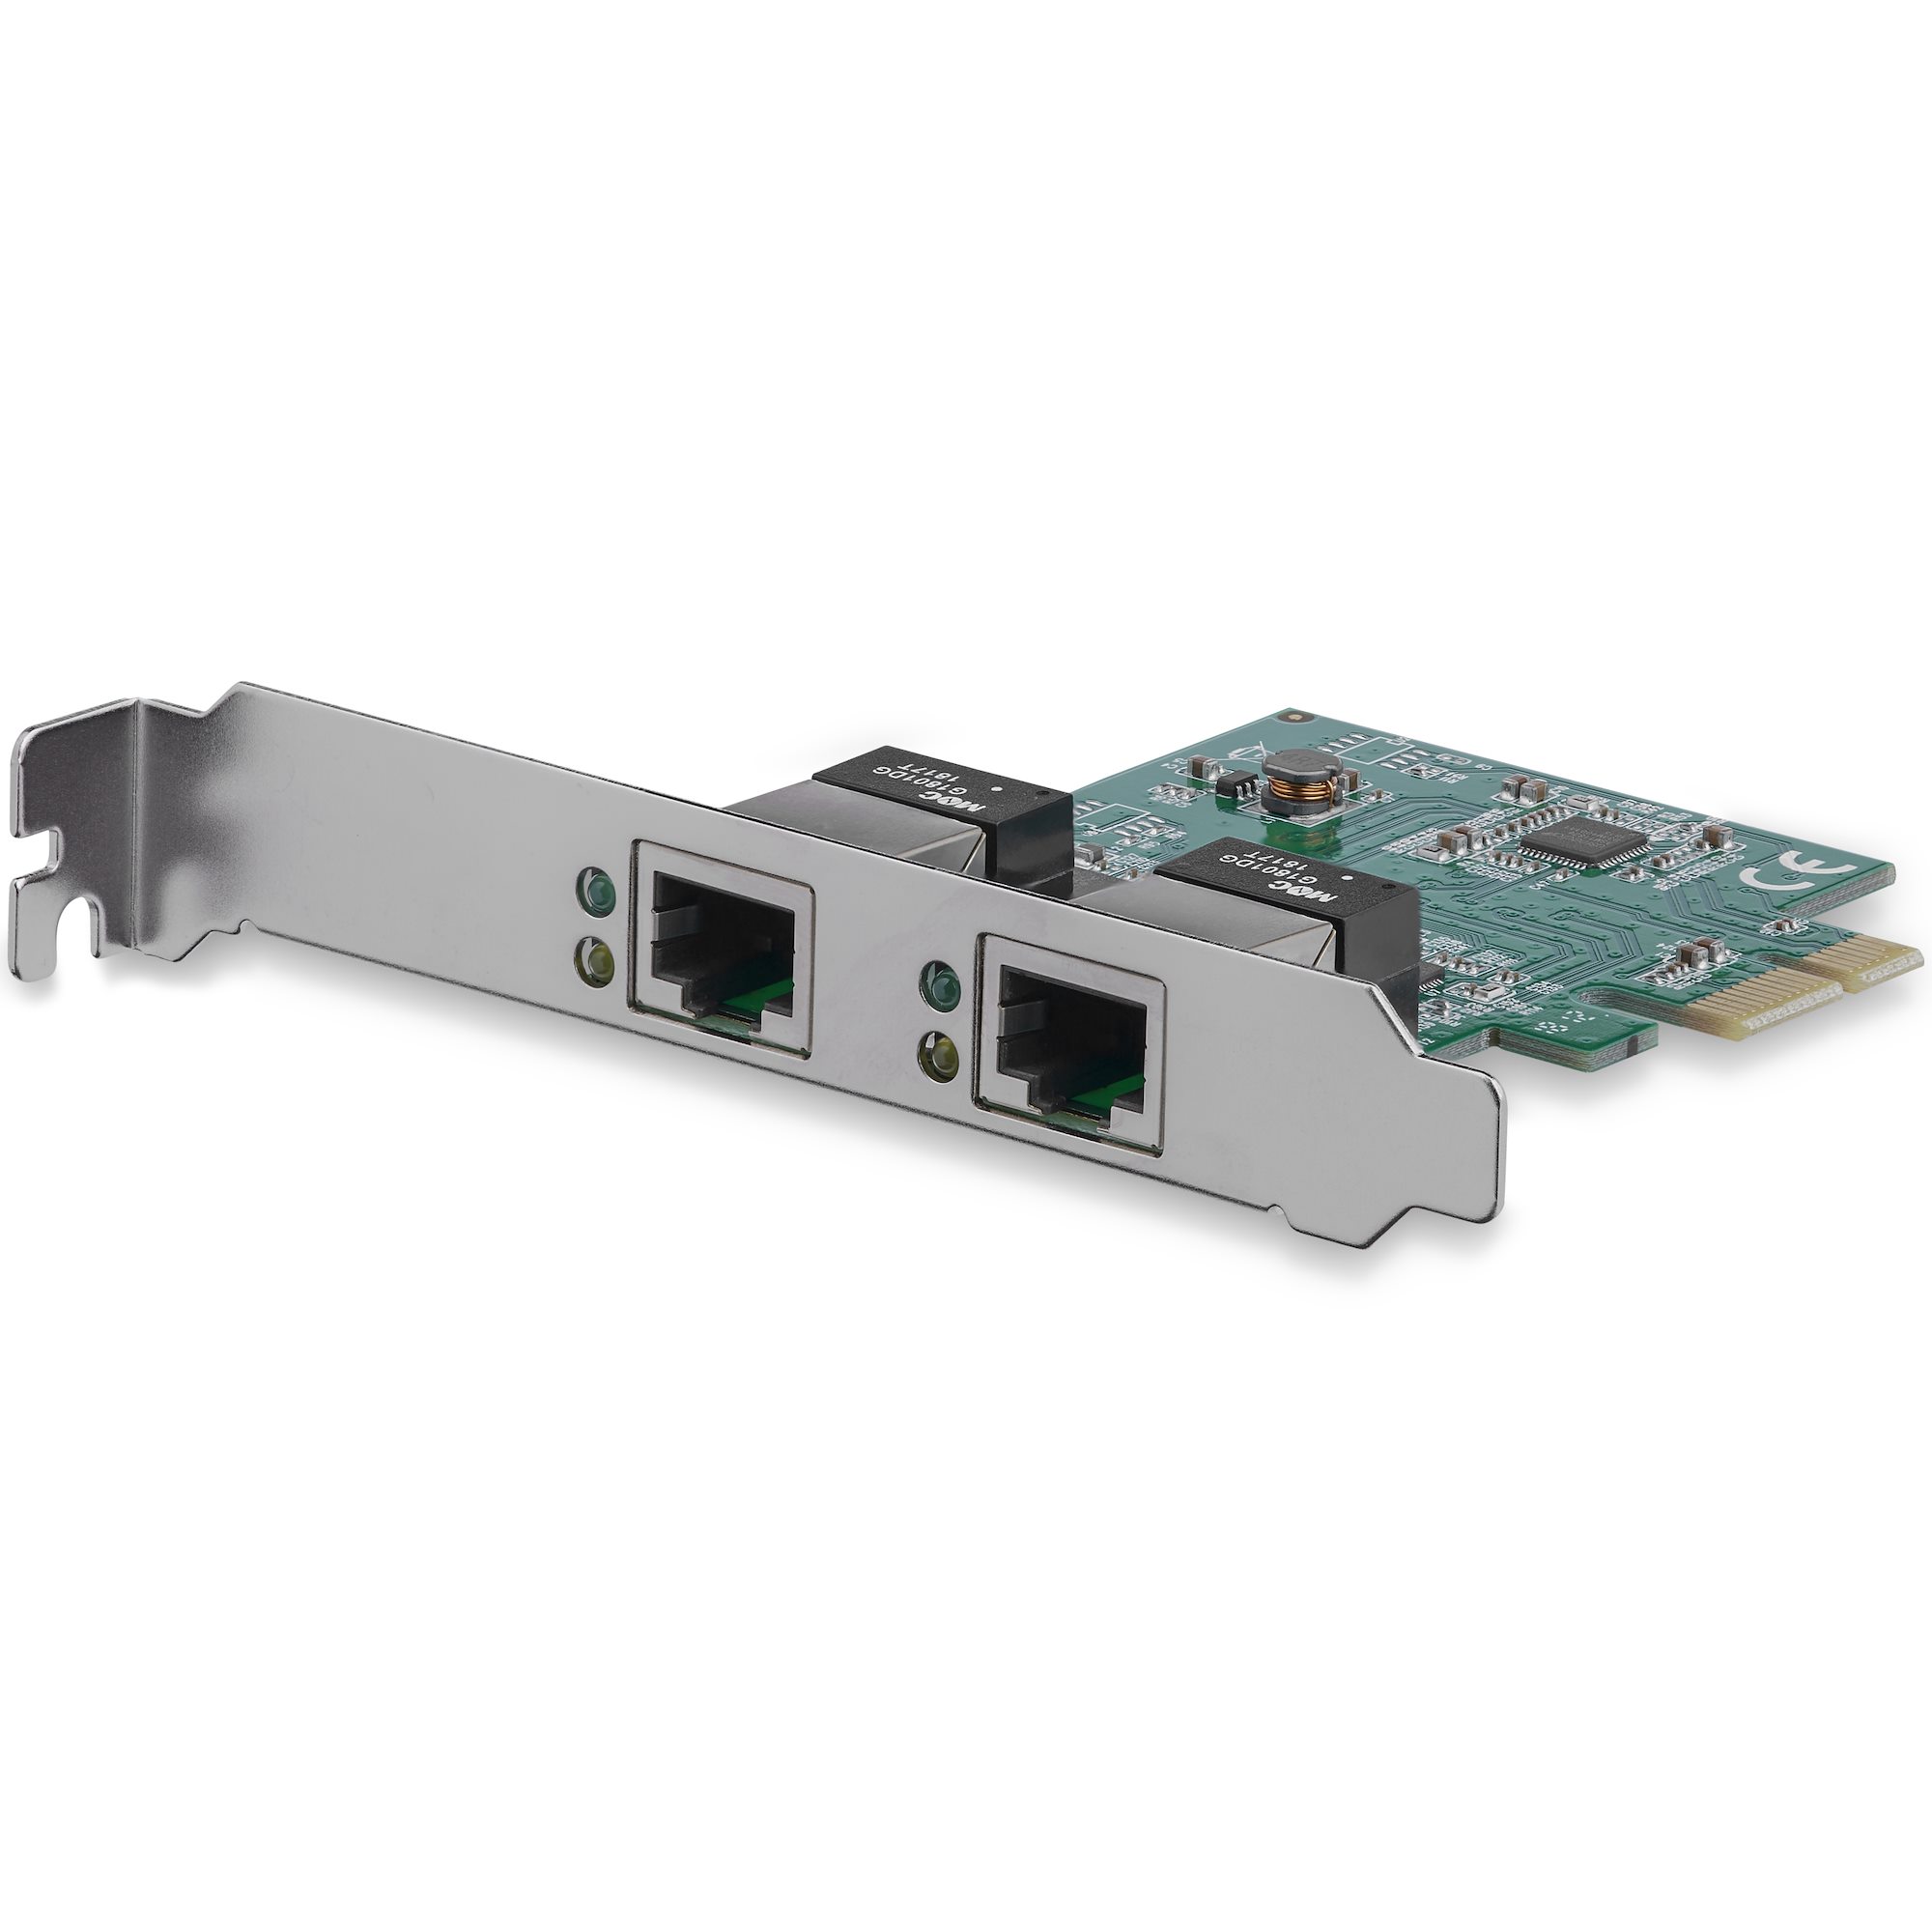 ギガビットイーサネット2ポート増設PCIe対応ネットワークアダプタLANカード - ネットワークアダプタ カード | 日本